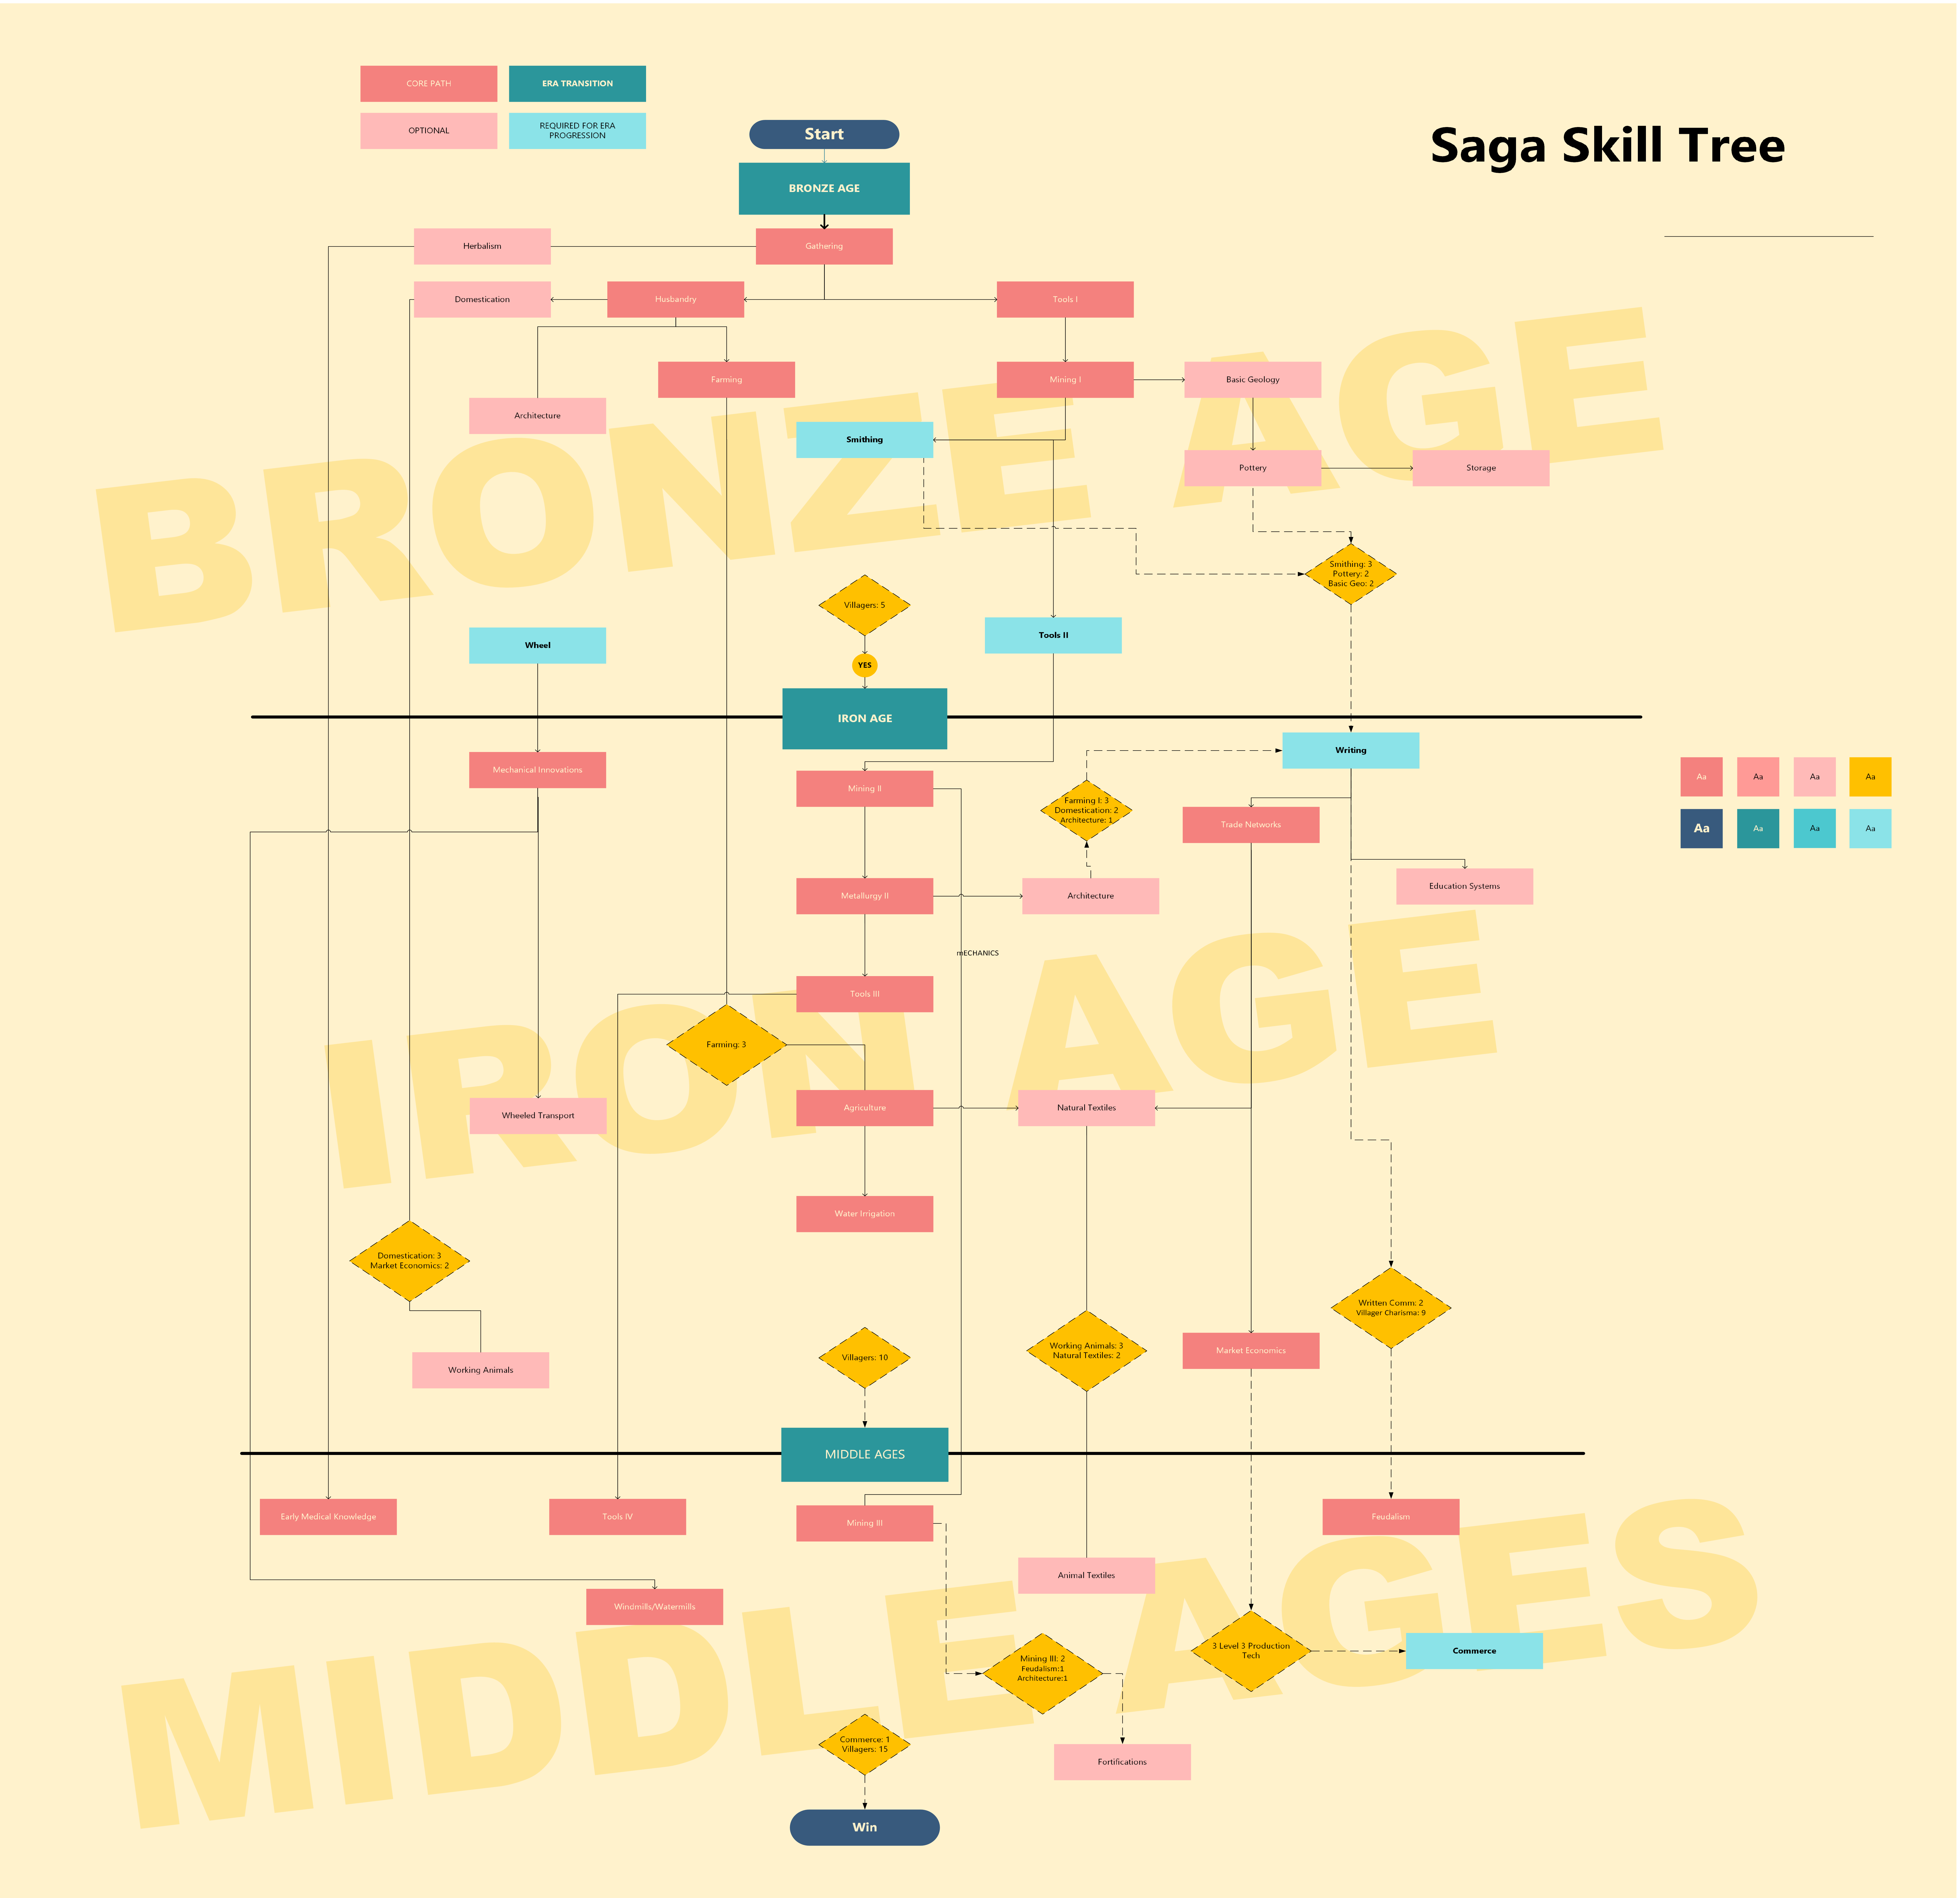 Saga Skill Tree